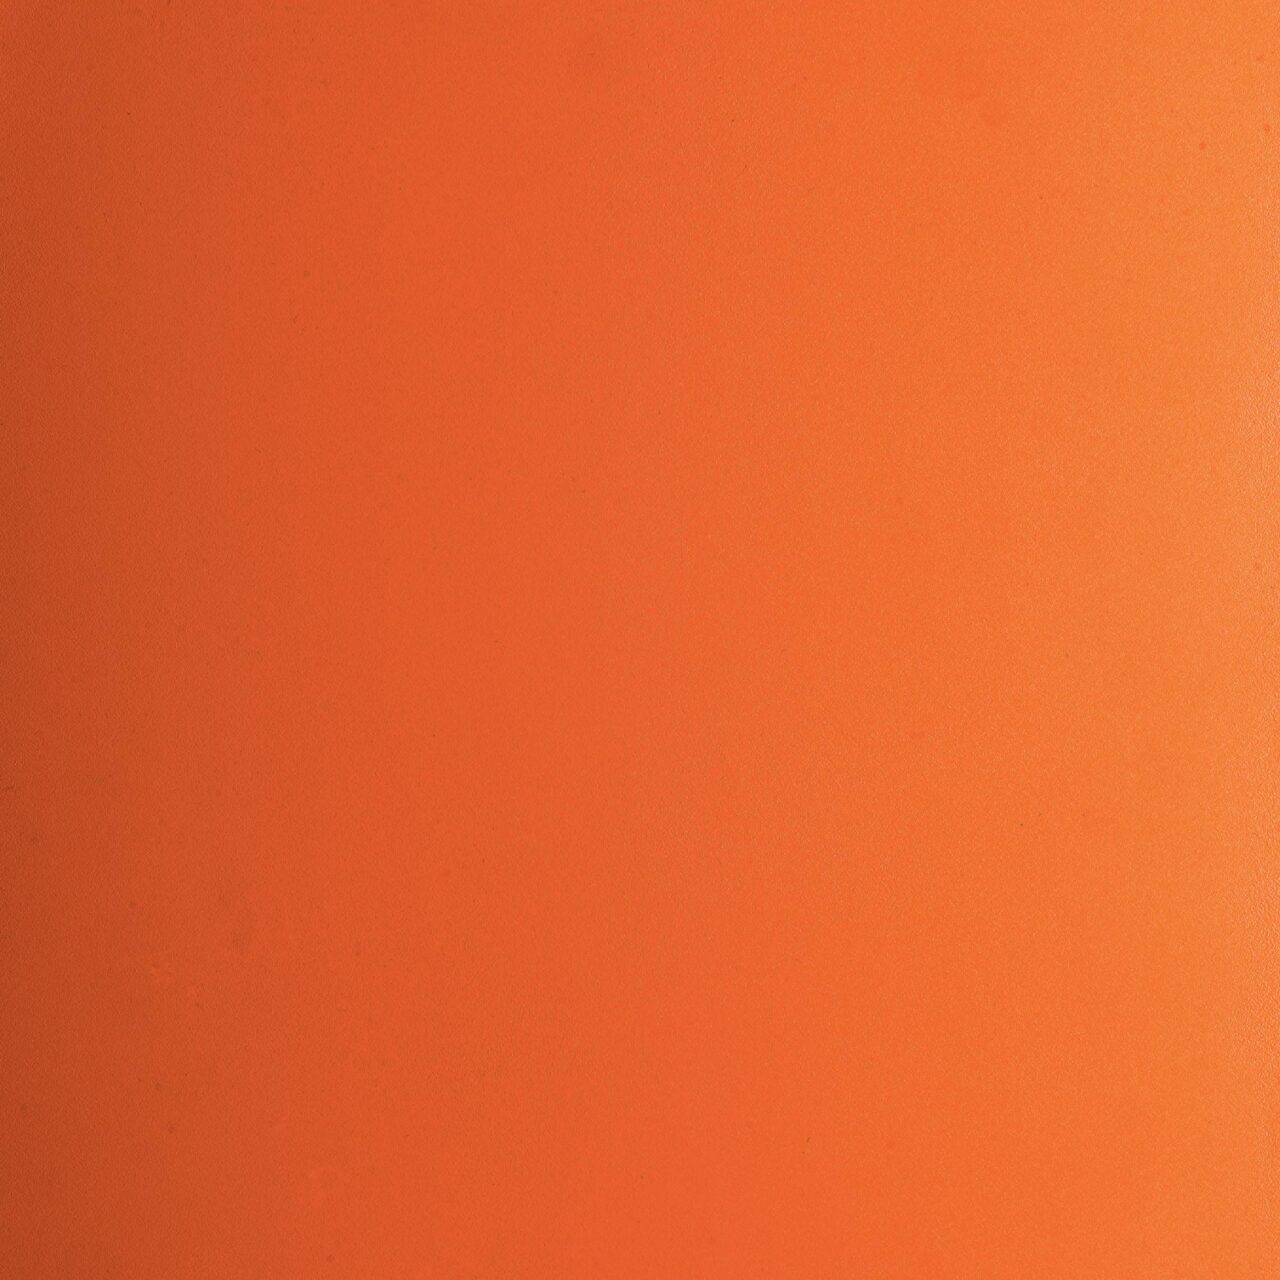 11.18 - Pure orange (RAL 2004) - Metal essential